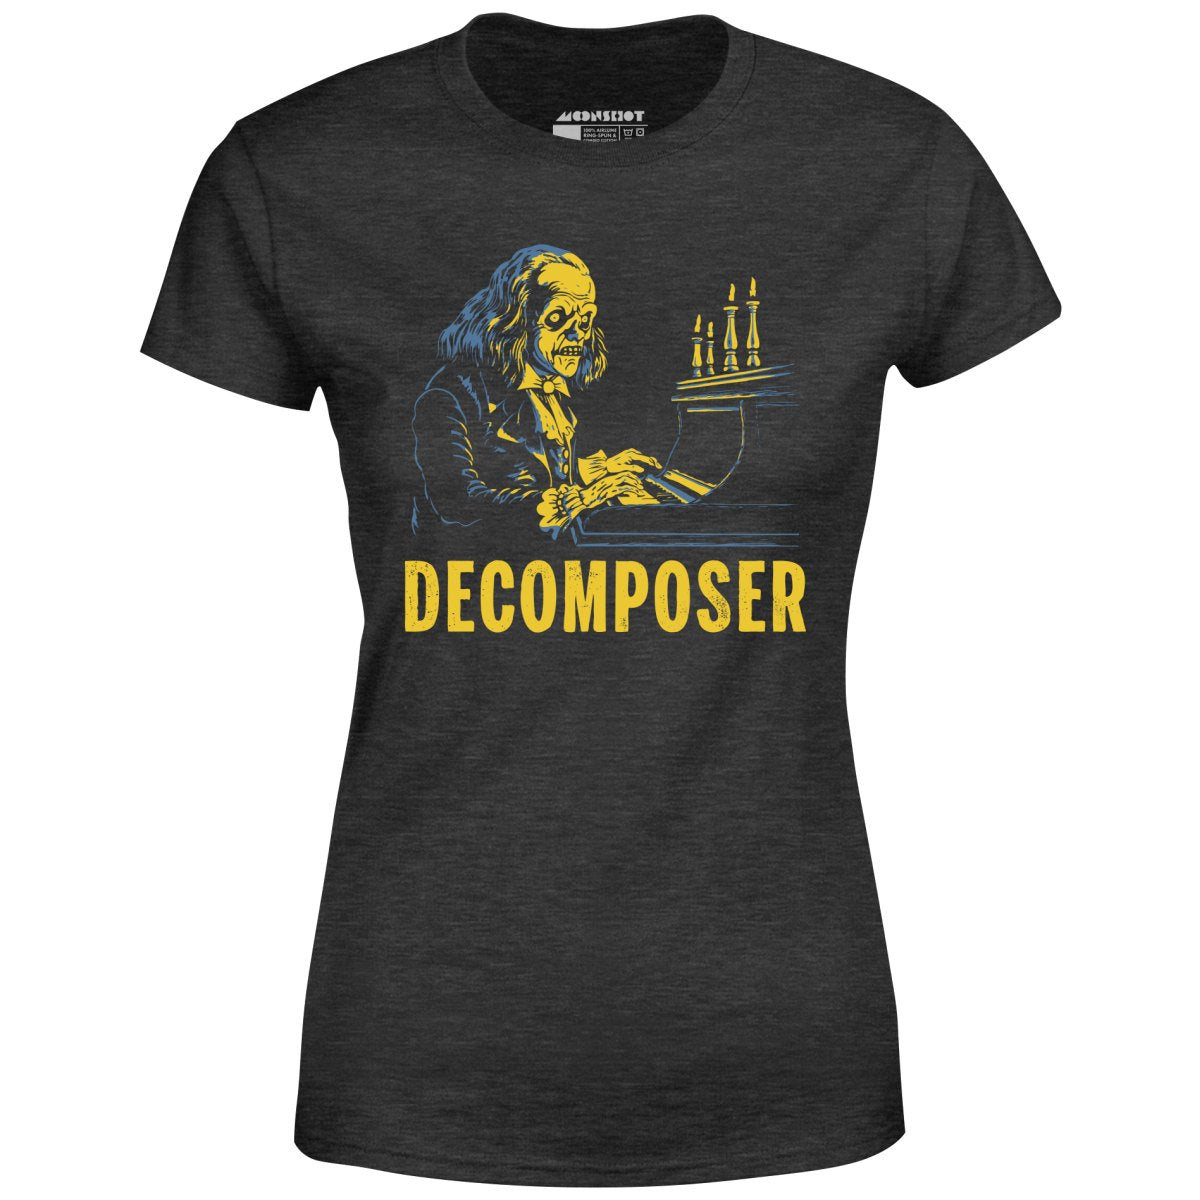 Decomposer - Women's T-Shirt